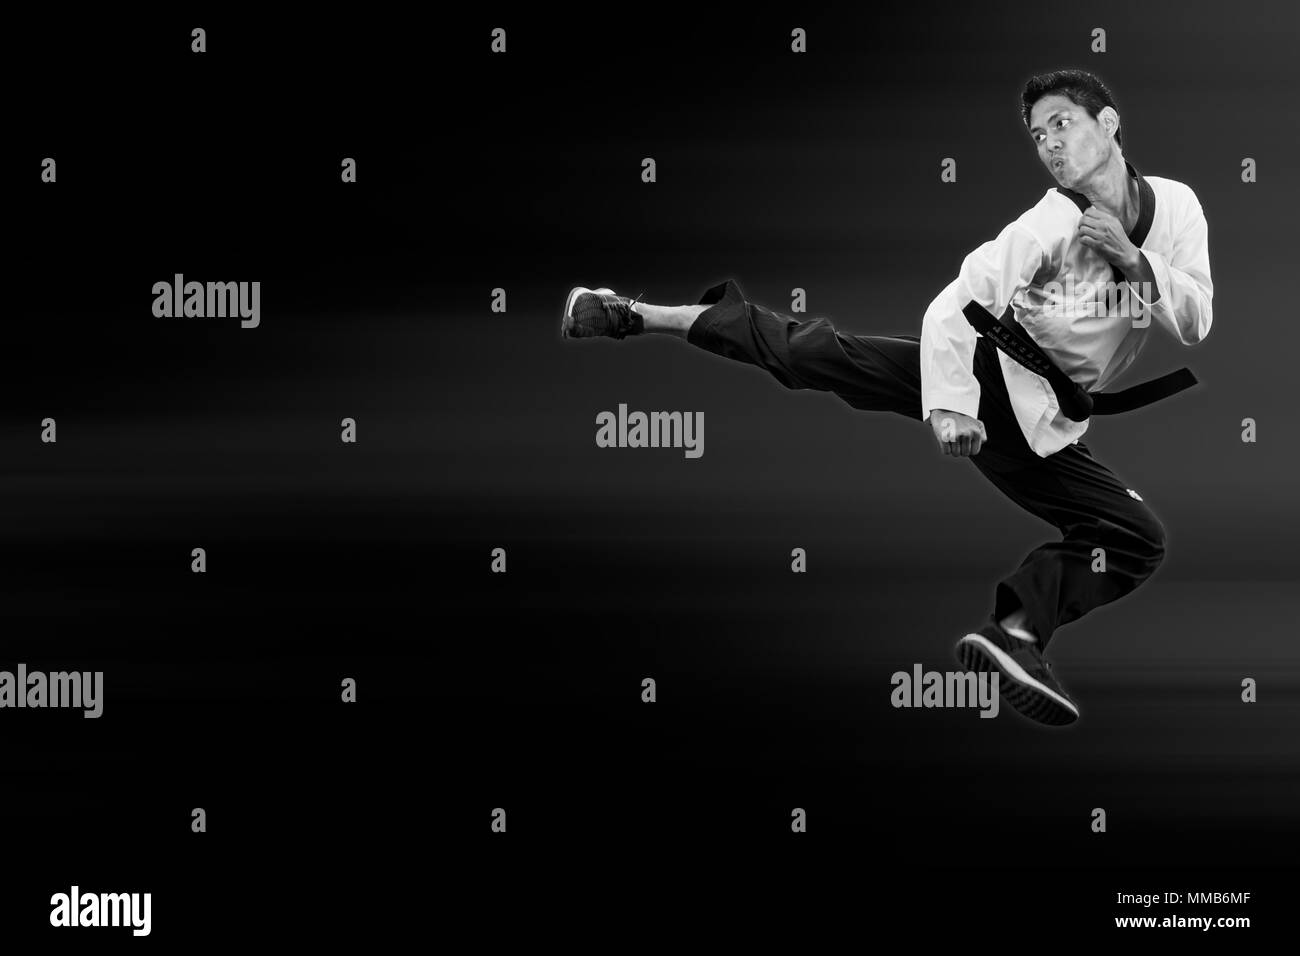 Taekwondo Mann springen Flying High Kick auf Schwarz für Plakat Hintergrund mit Freistellungspfad Stockfoto